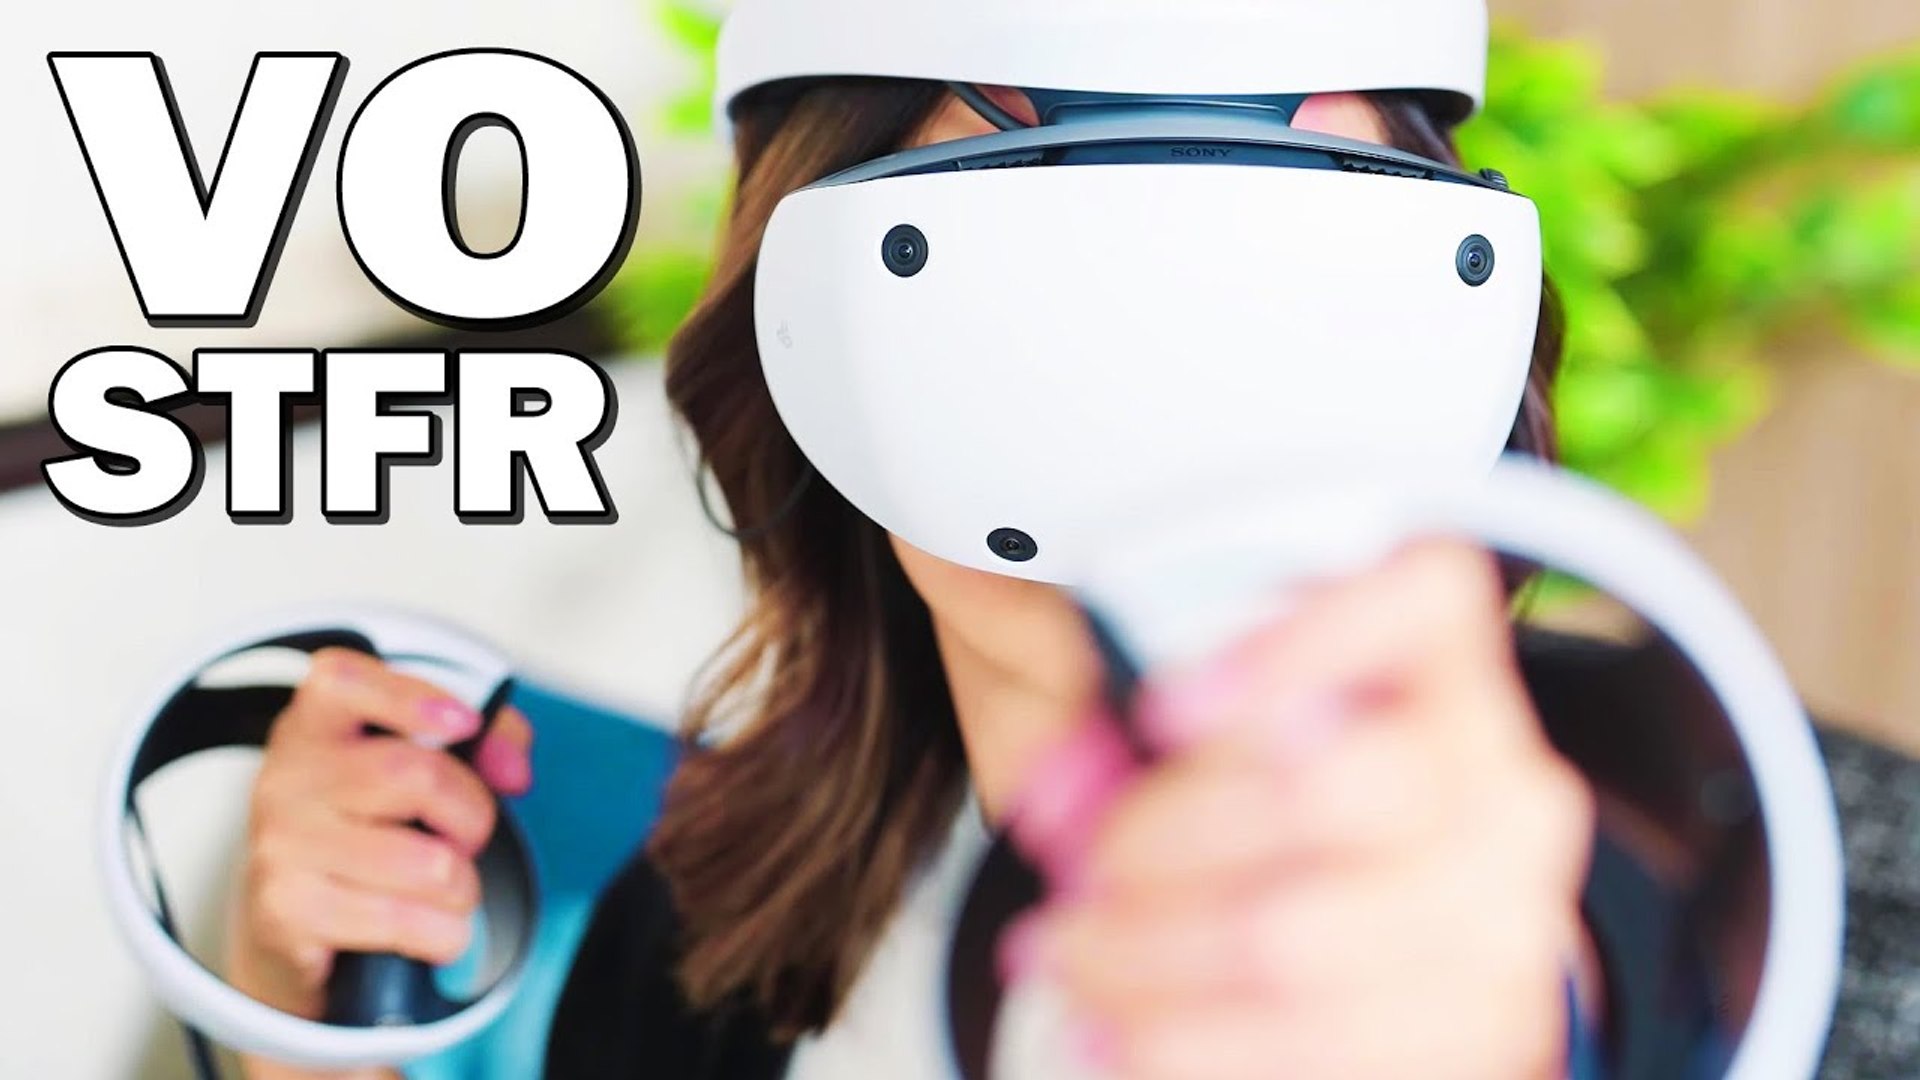 PlayStation VR 2 : UNBOXING du Casque VR de la PS5 - Vidéo Dailymotion